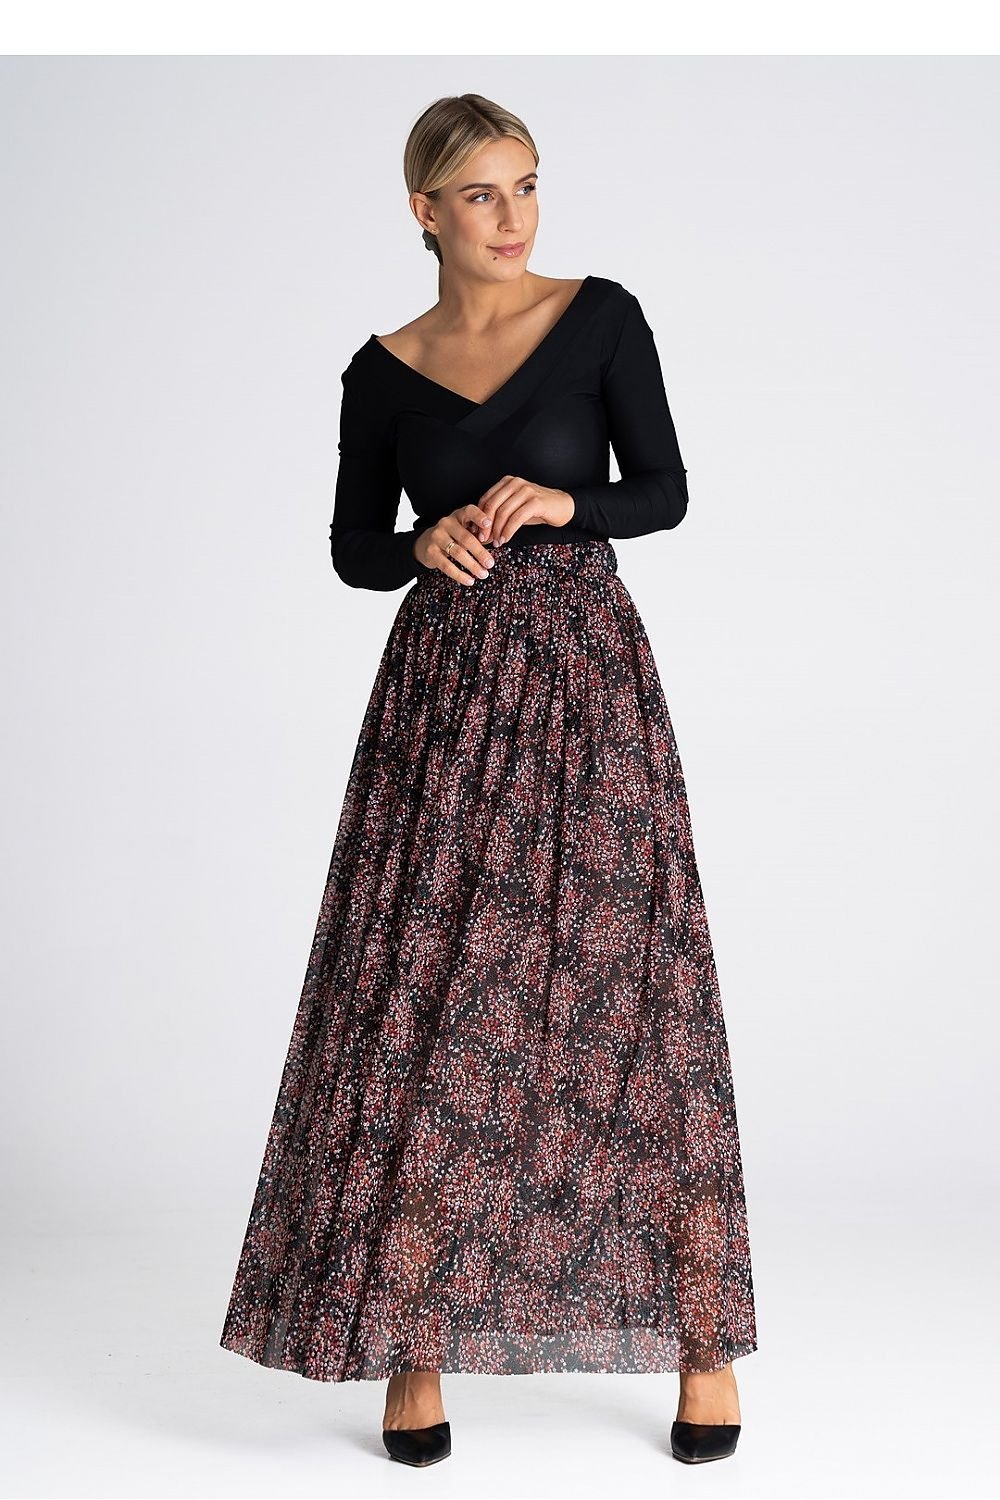 Jupe longue bohème chic en tulle à motif fleuri avec taille haute élastique et finitions élégantes pour un style féminin et tendance.